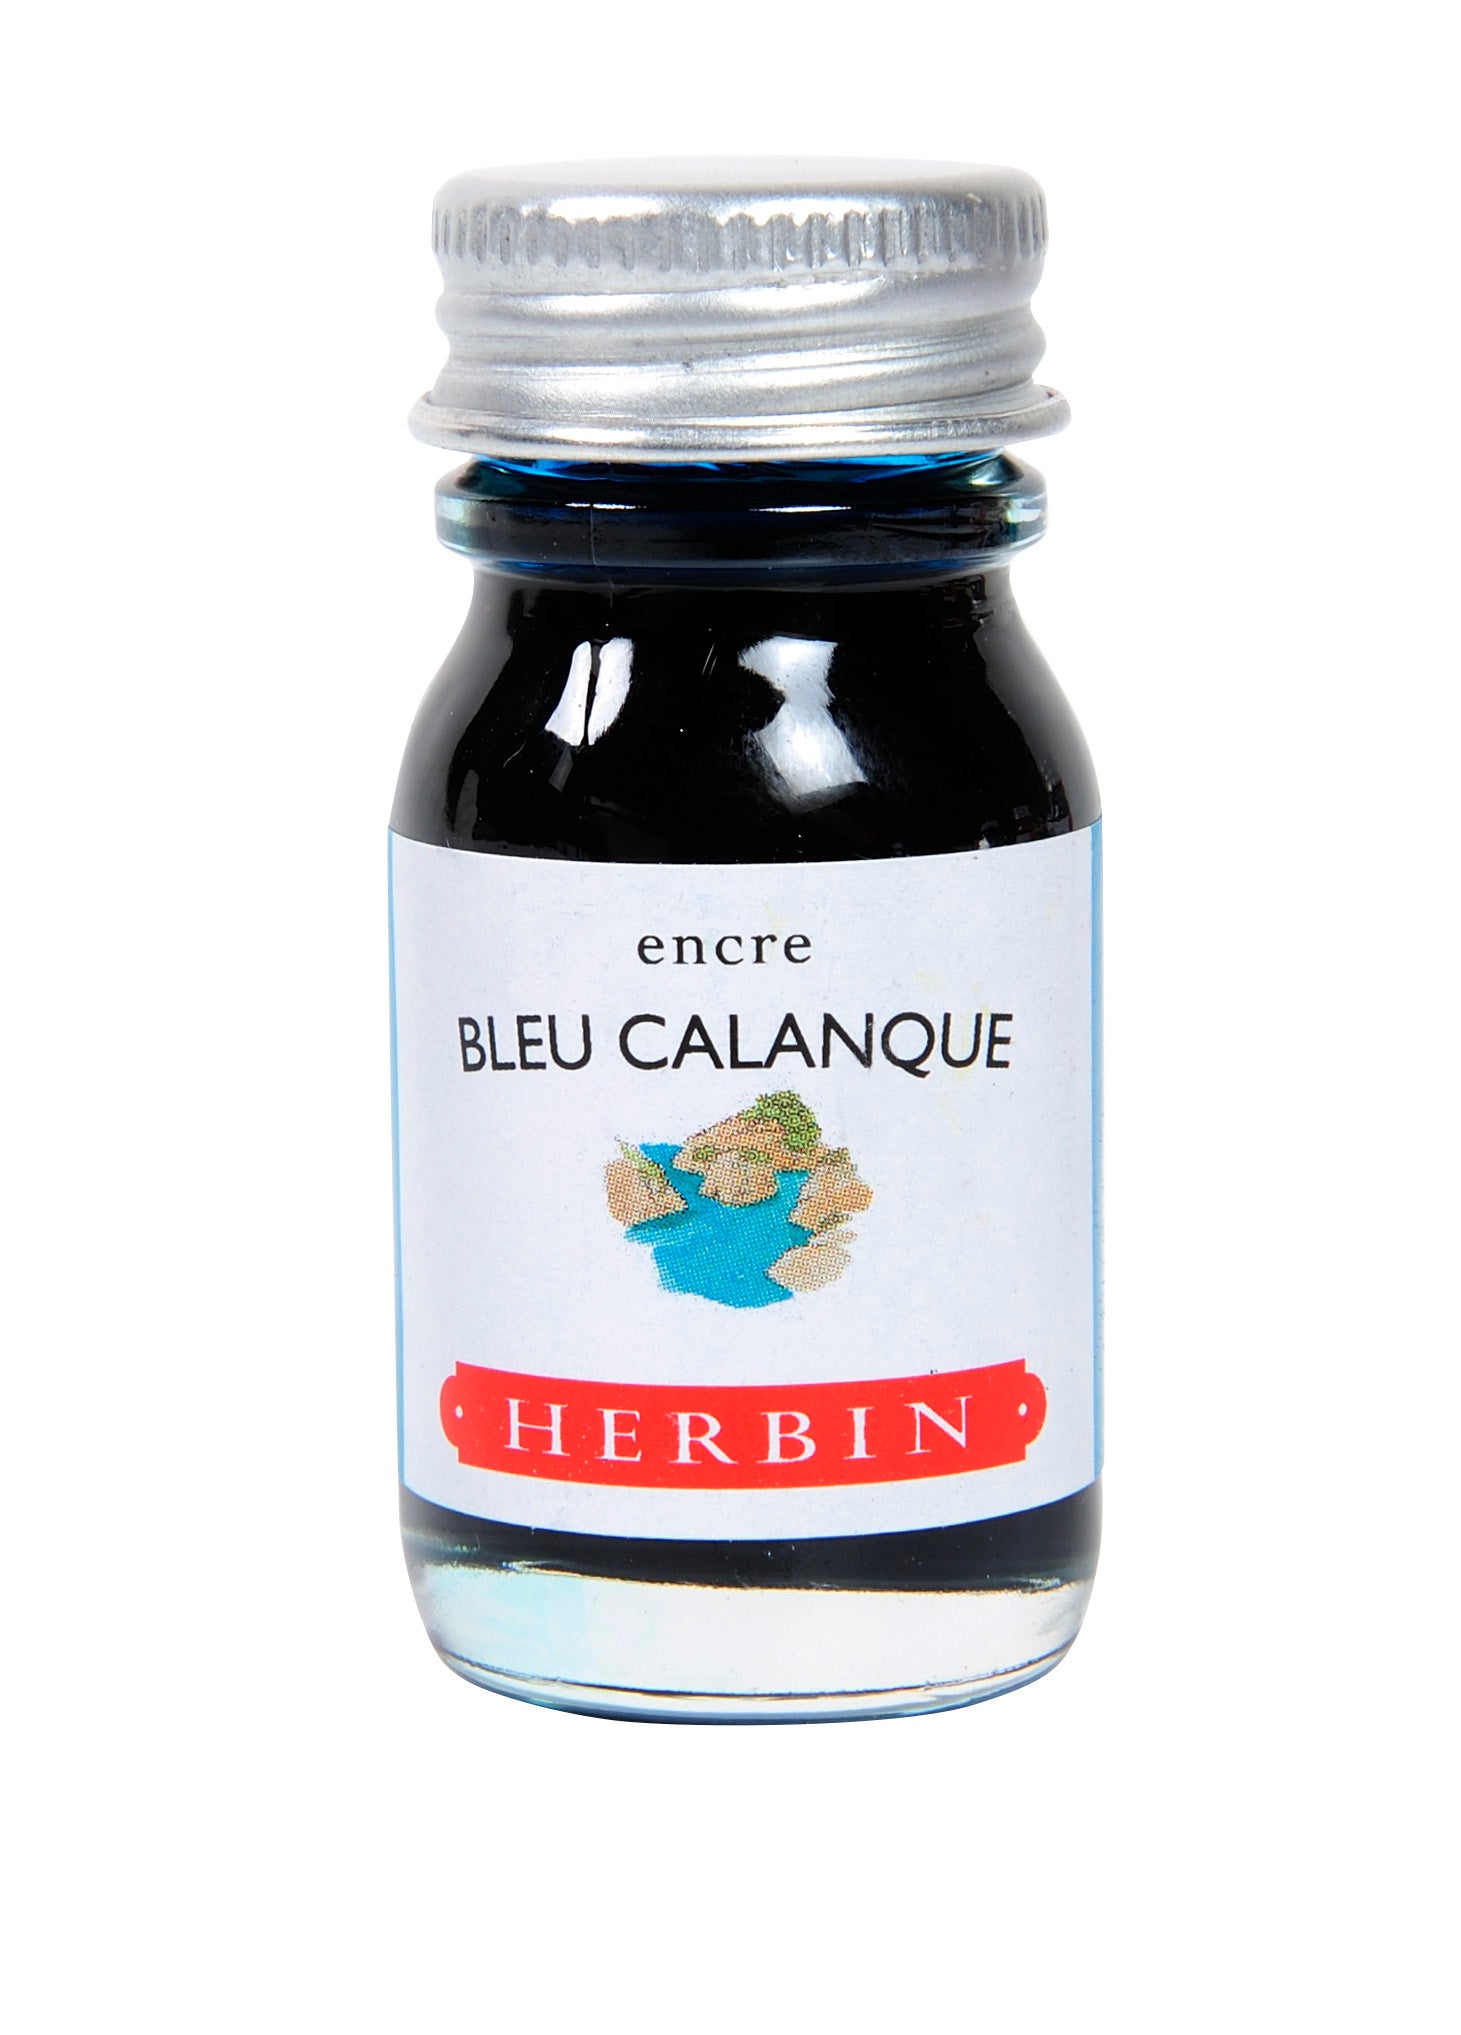 Bleu Calanque 10 ml Tintenglas von J. Herbin.